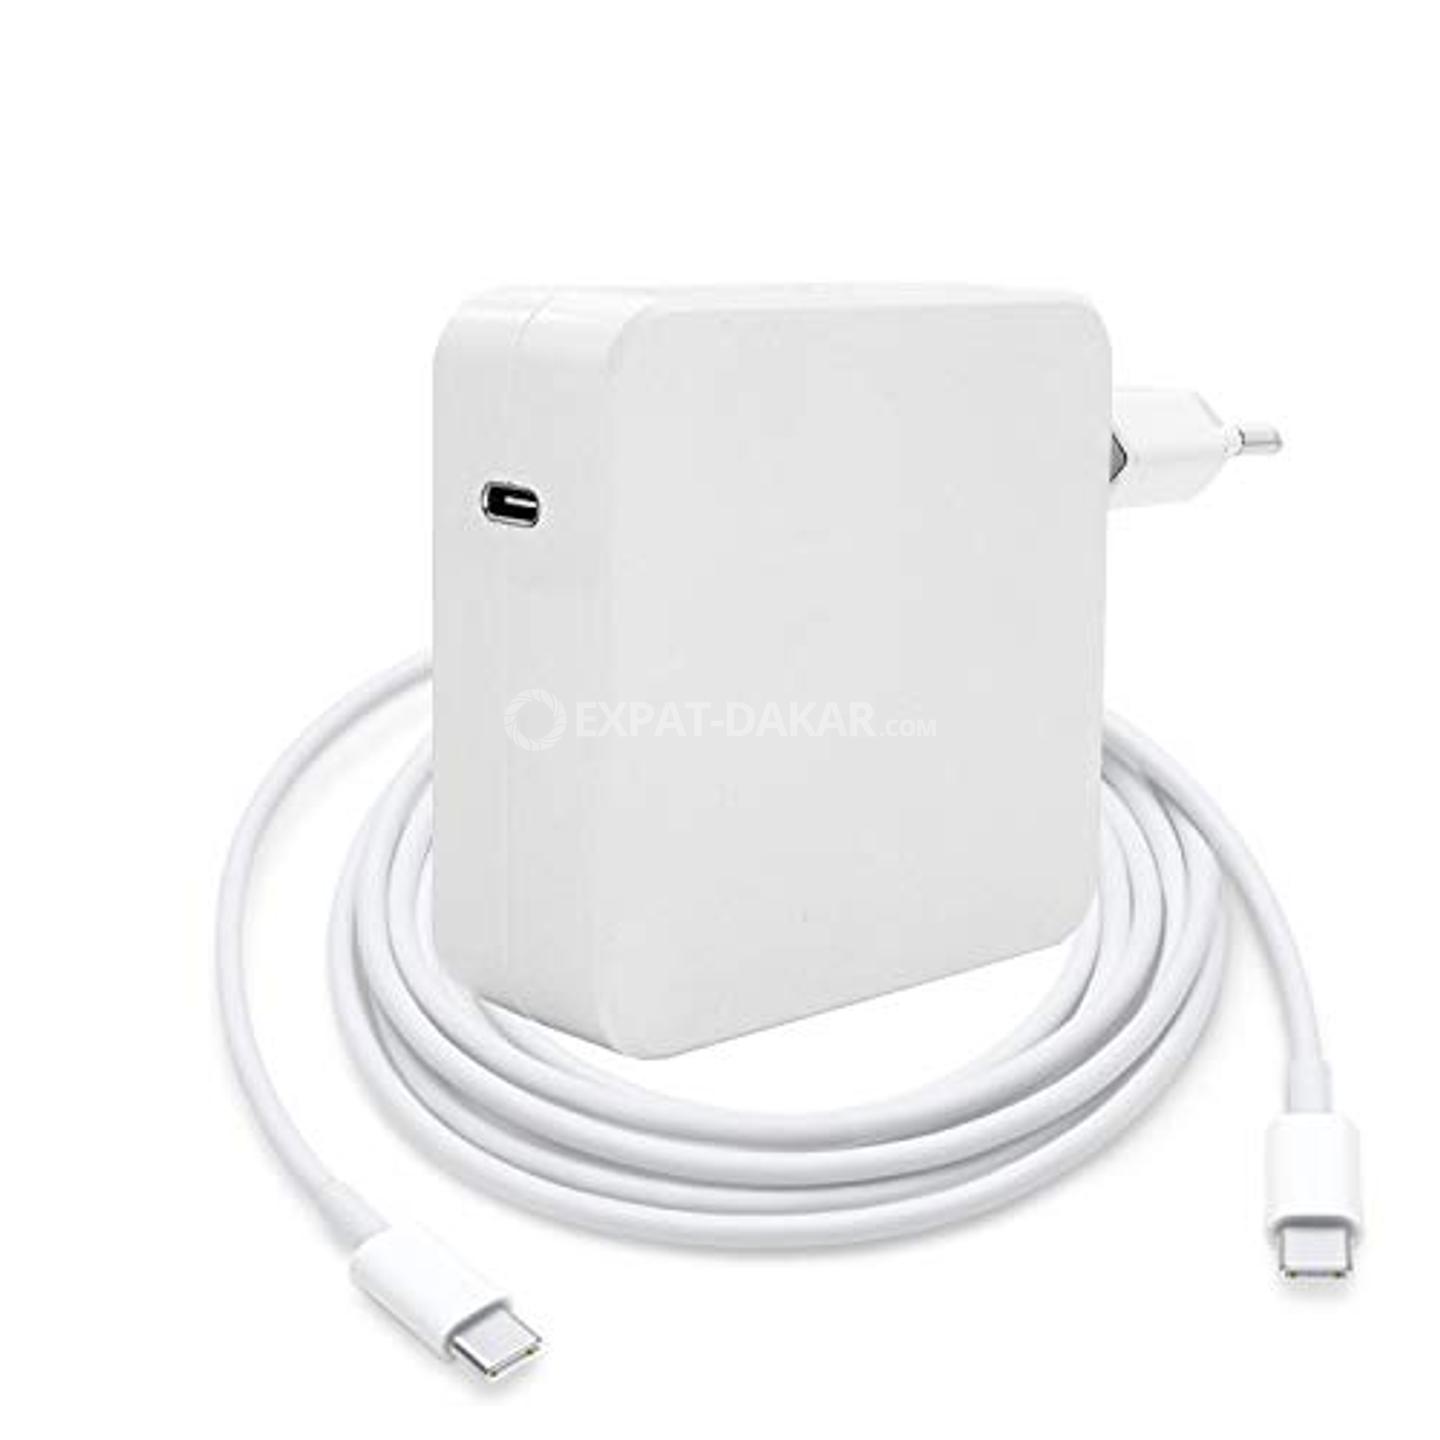 Chargeur MacBook Pro, 61W Chargeur USB C pour MacBook Pro - Dieuppeul